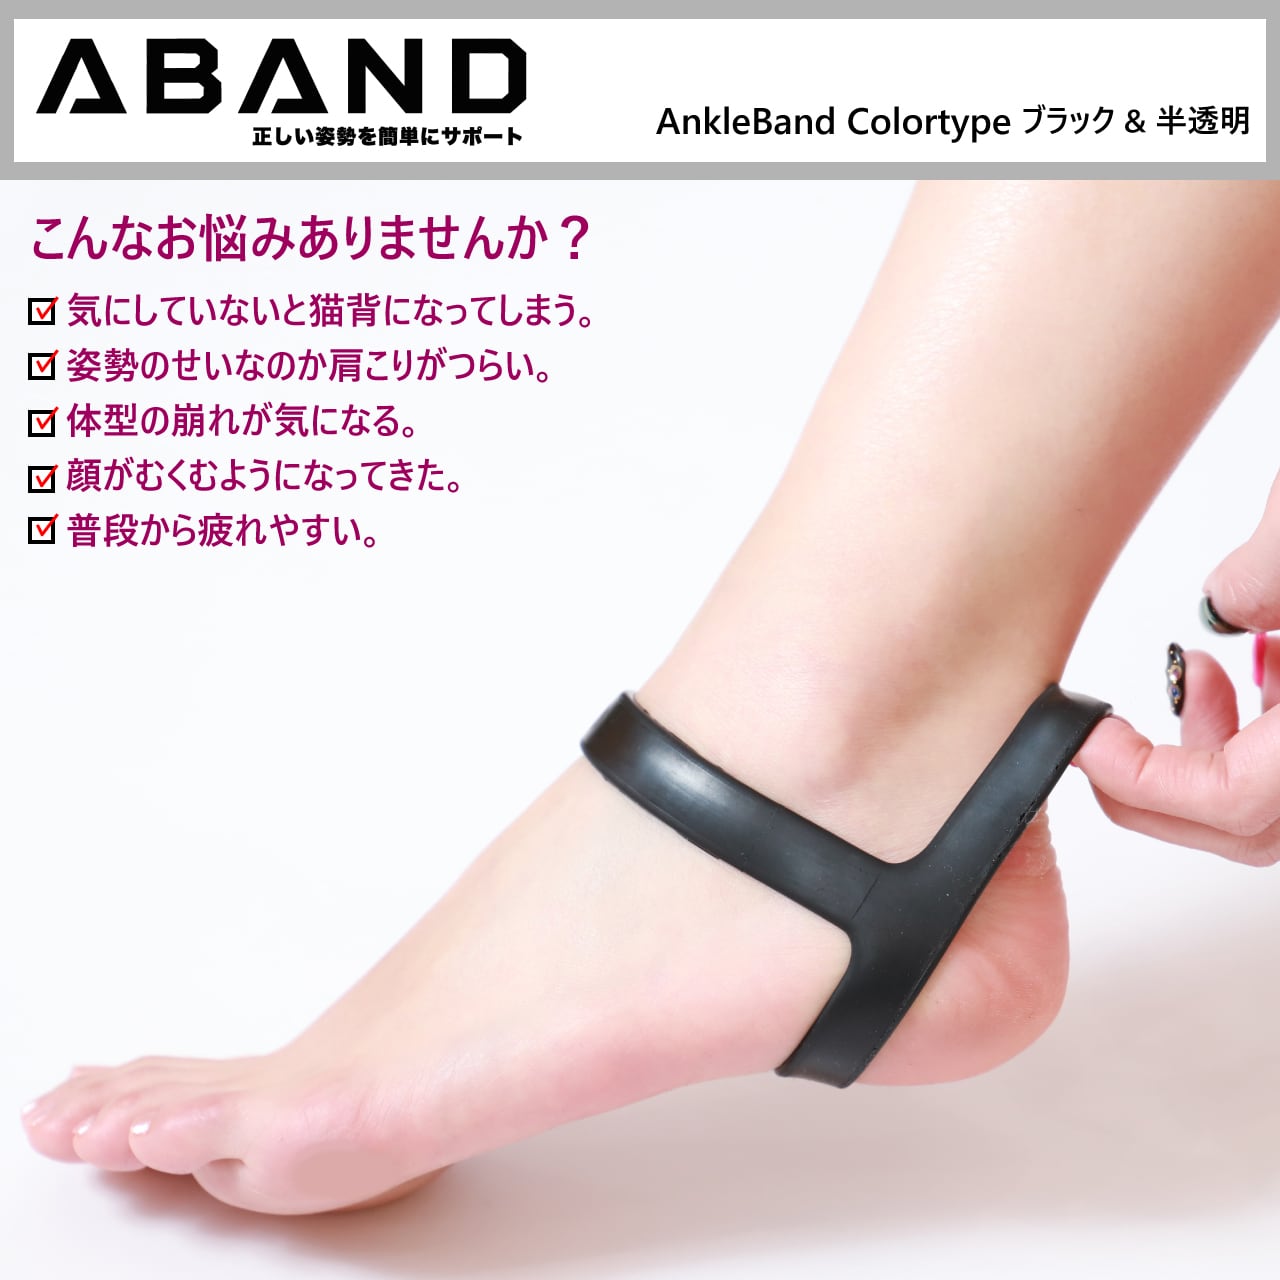 新品?正規品 AnkleBand １点 アンクルバンド 健康用品 アバンド